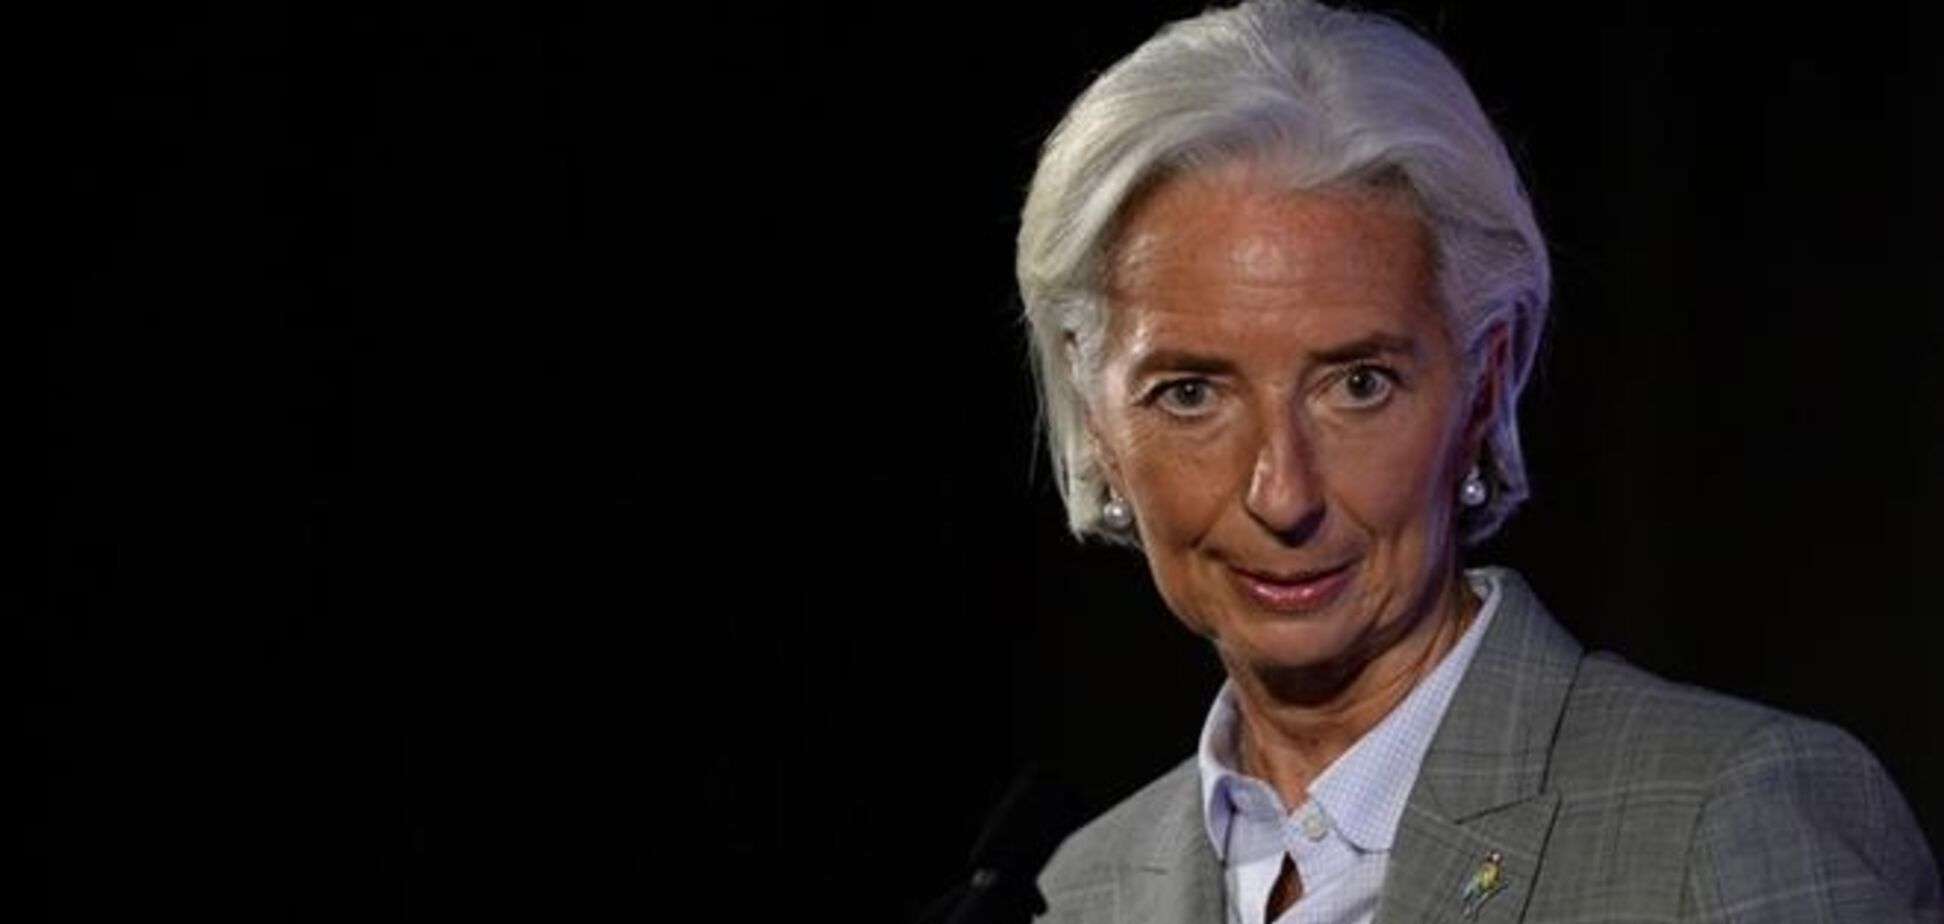 МВФ готов направить миссию в Украину